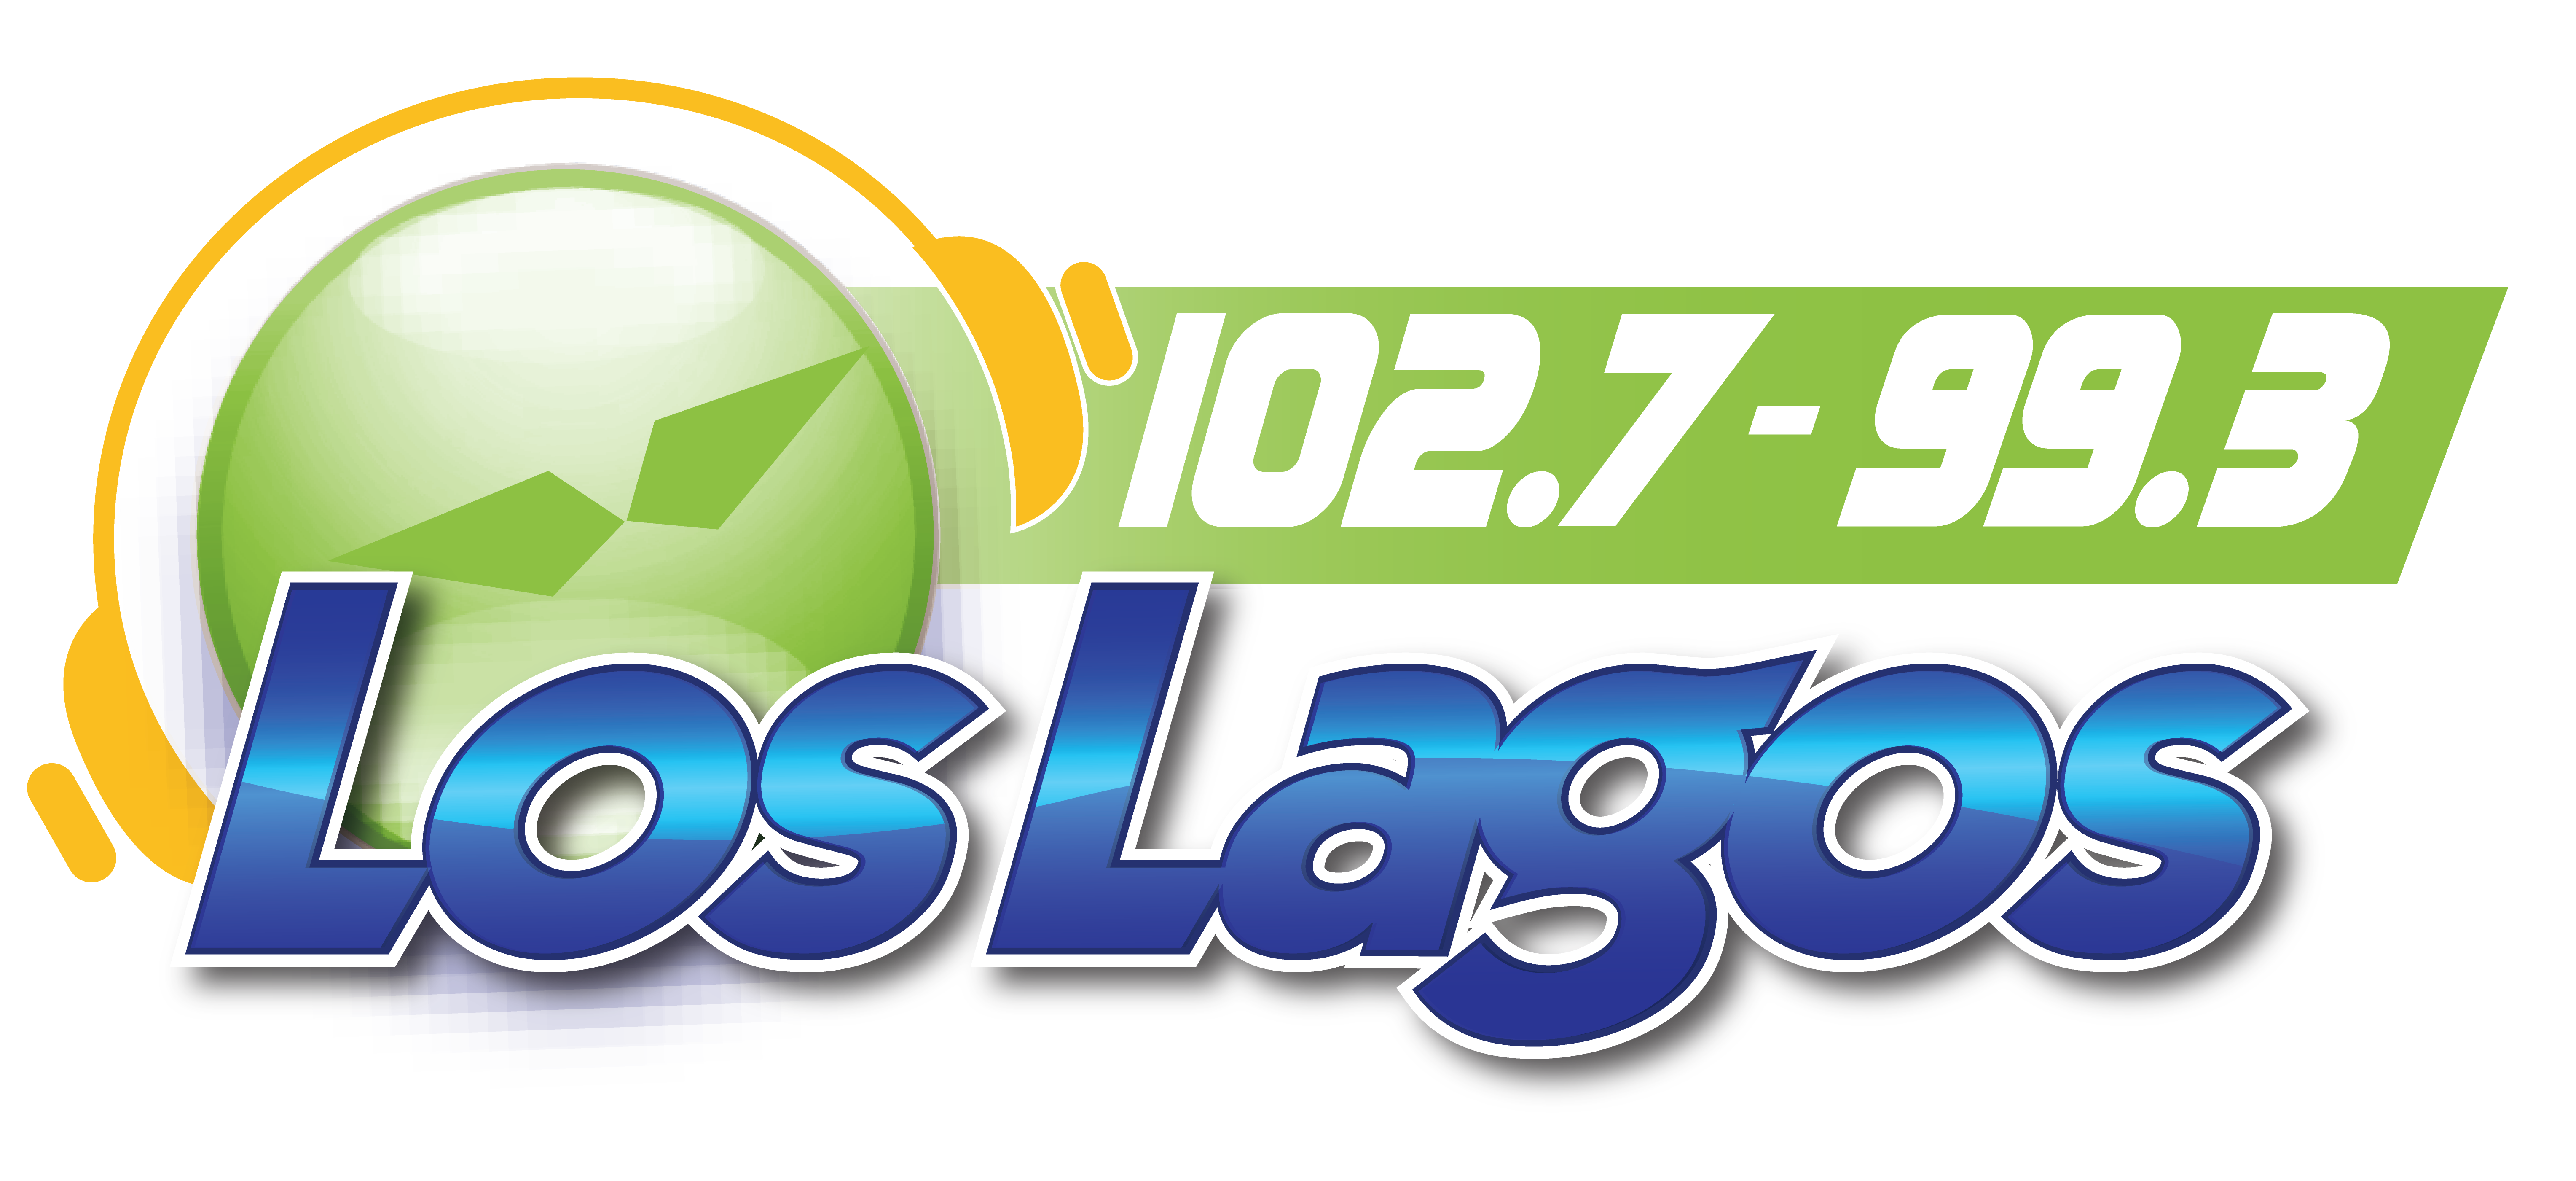 Radio Los Lagos